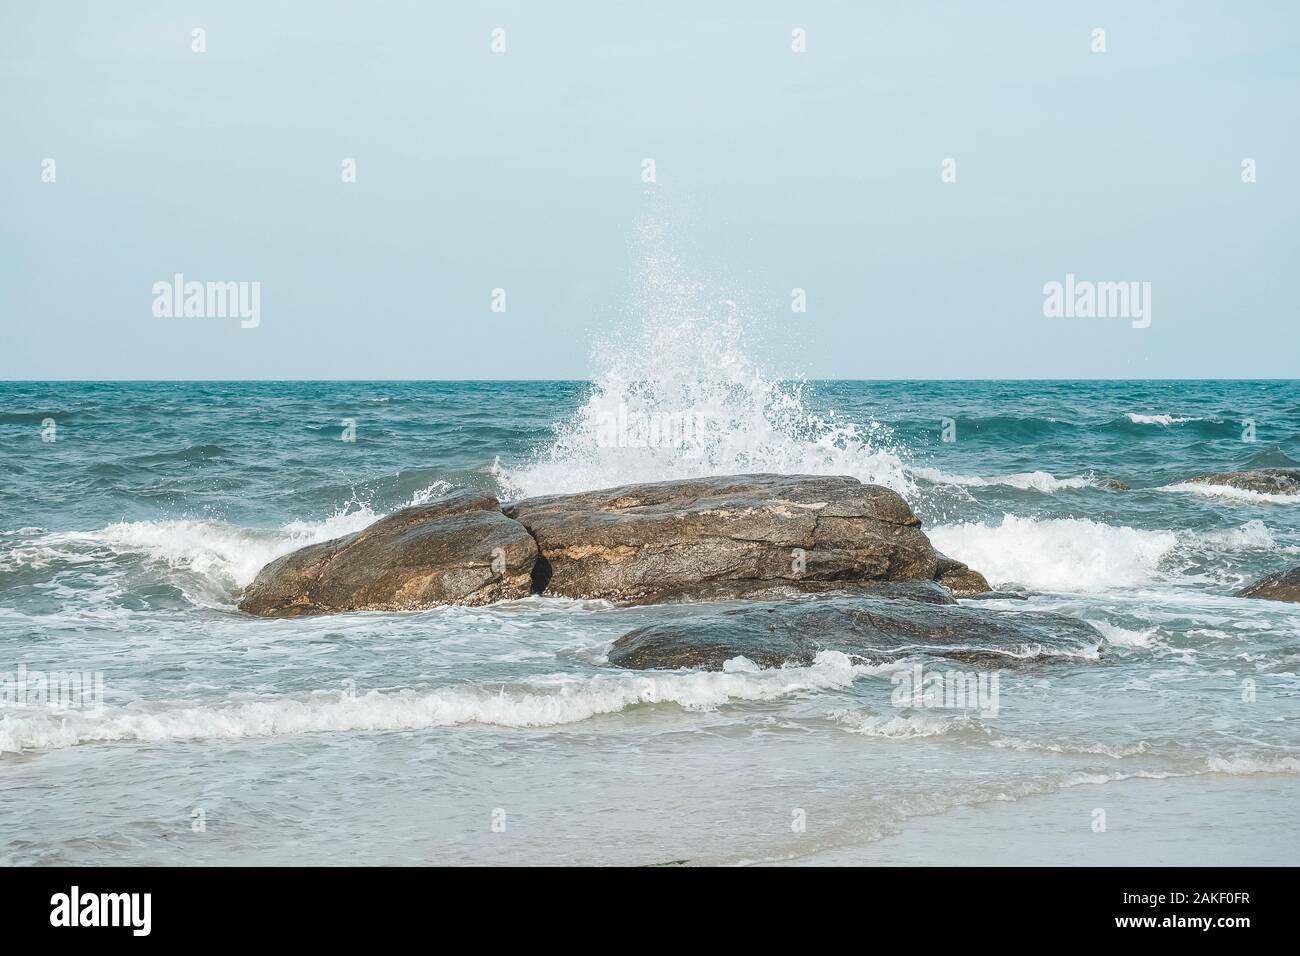 Sea wave e schizzi colpisce la pietra sulla spiaggia di Hua Hin, Prachuap Khiri Khan, Thailandia. Toni pastello. Foto Stock